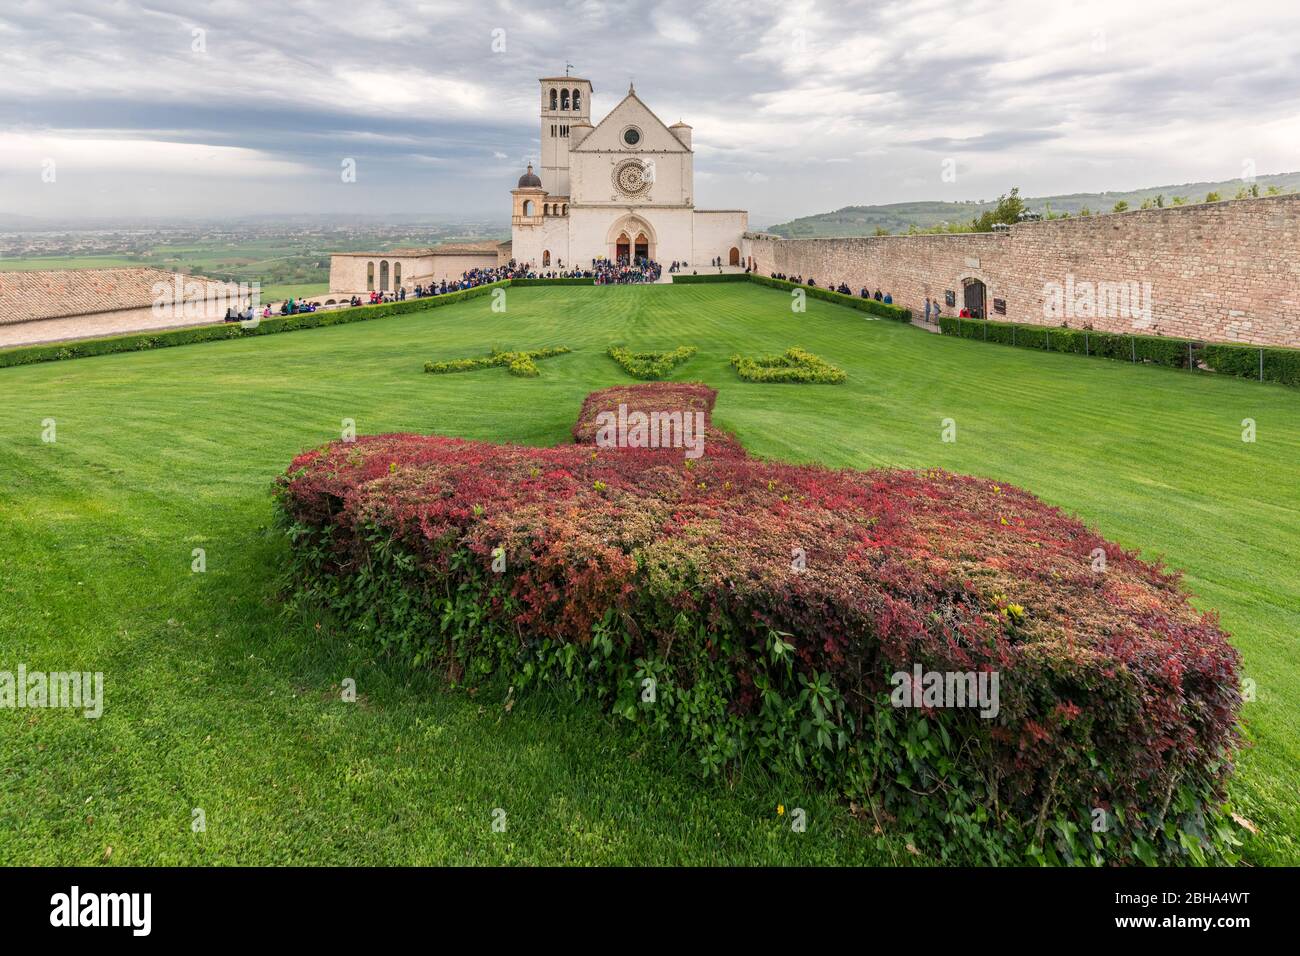 Basilique San Francesco, site classé au patrimoine mondial de l'UNESCO, Assise, province de Pérouse, Ombrie, Italie, Europe Banque D'Images